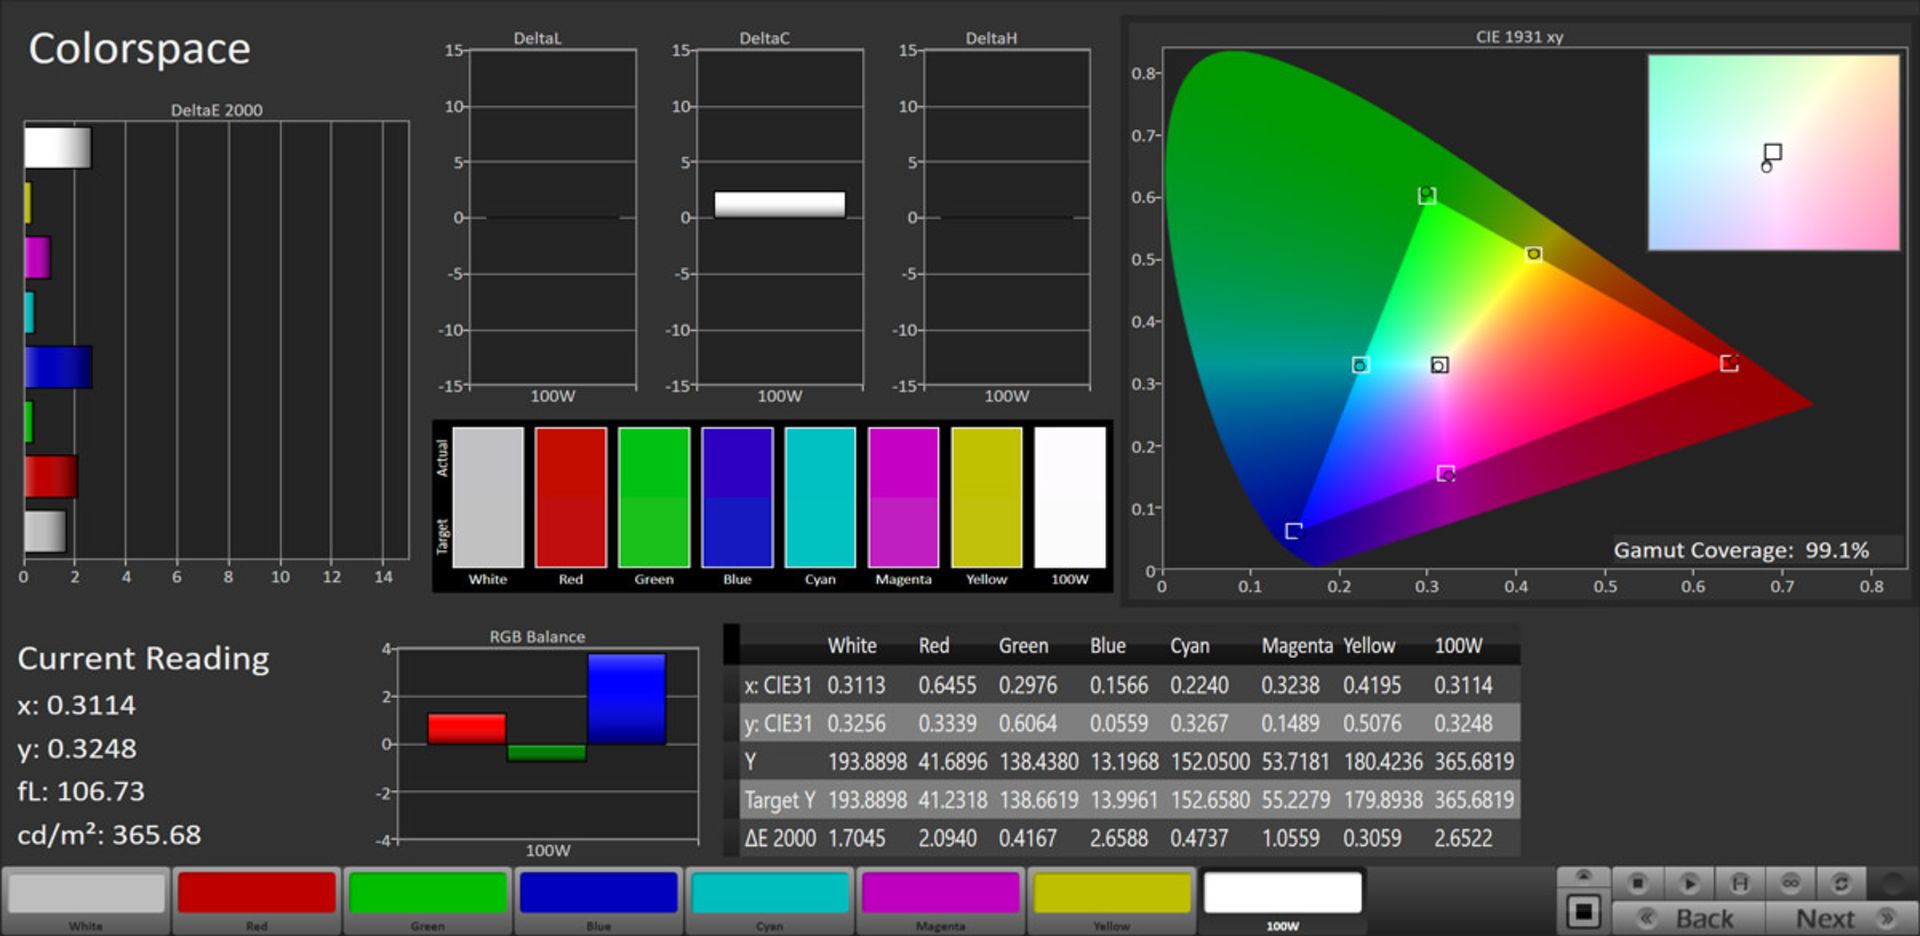 مرجع متخصصين ايران پوشش رنگي در حالت Normal و فضاي sRGB - آنر ۹ ايكس پرو